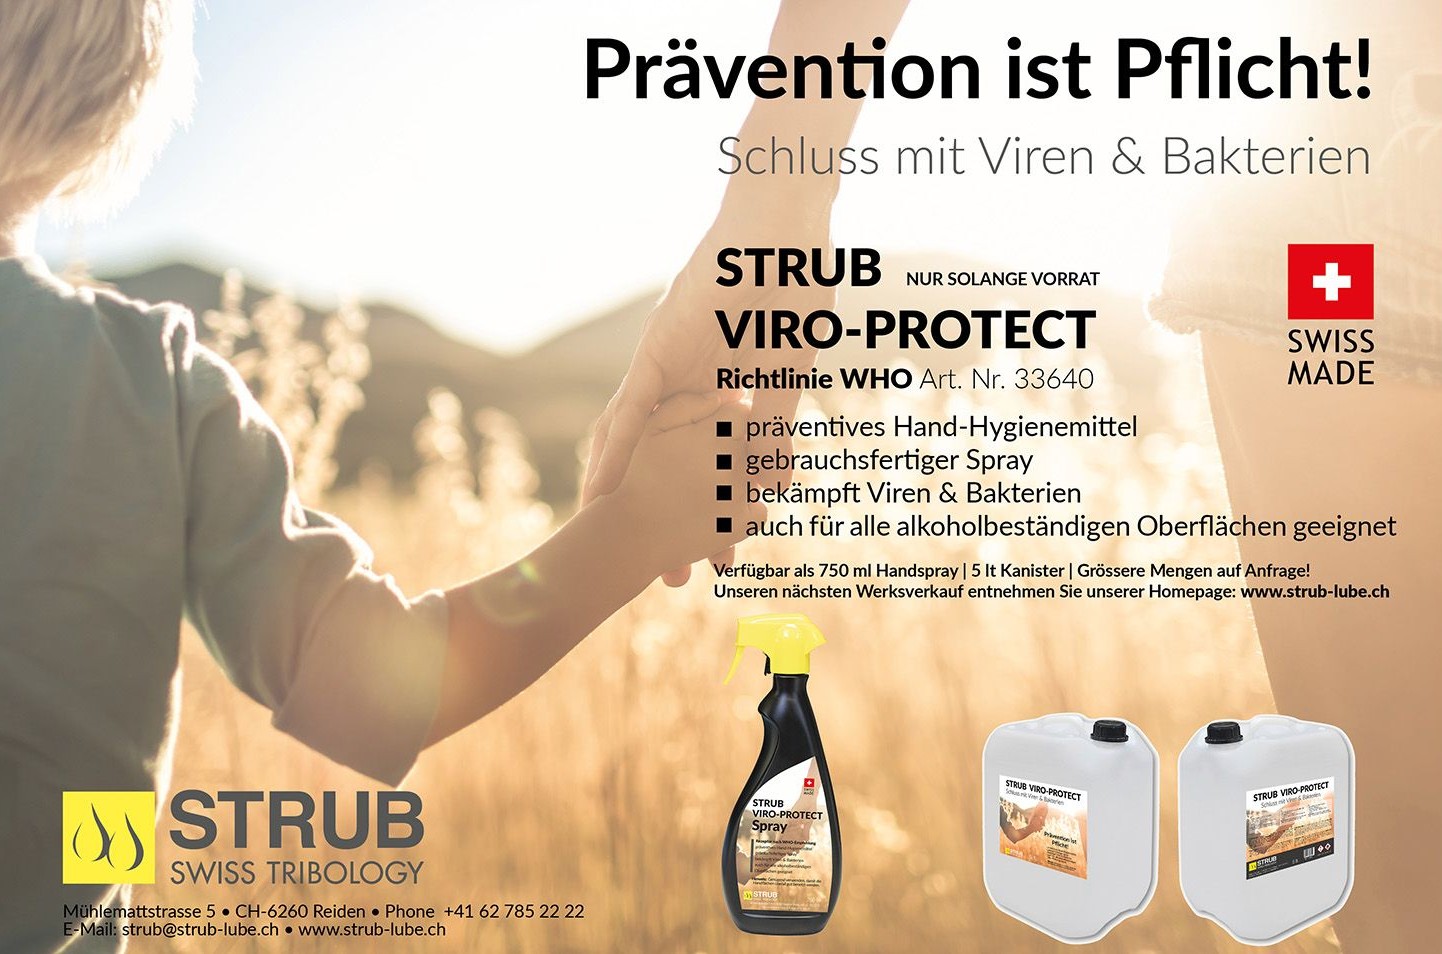 Strub Viro-Protect